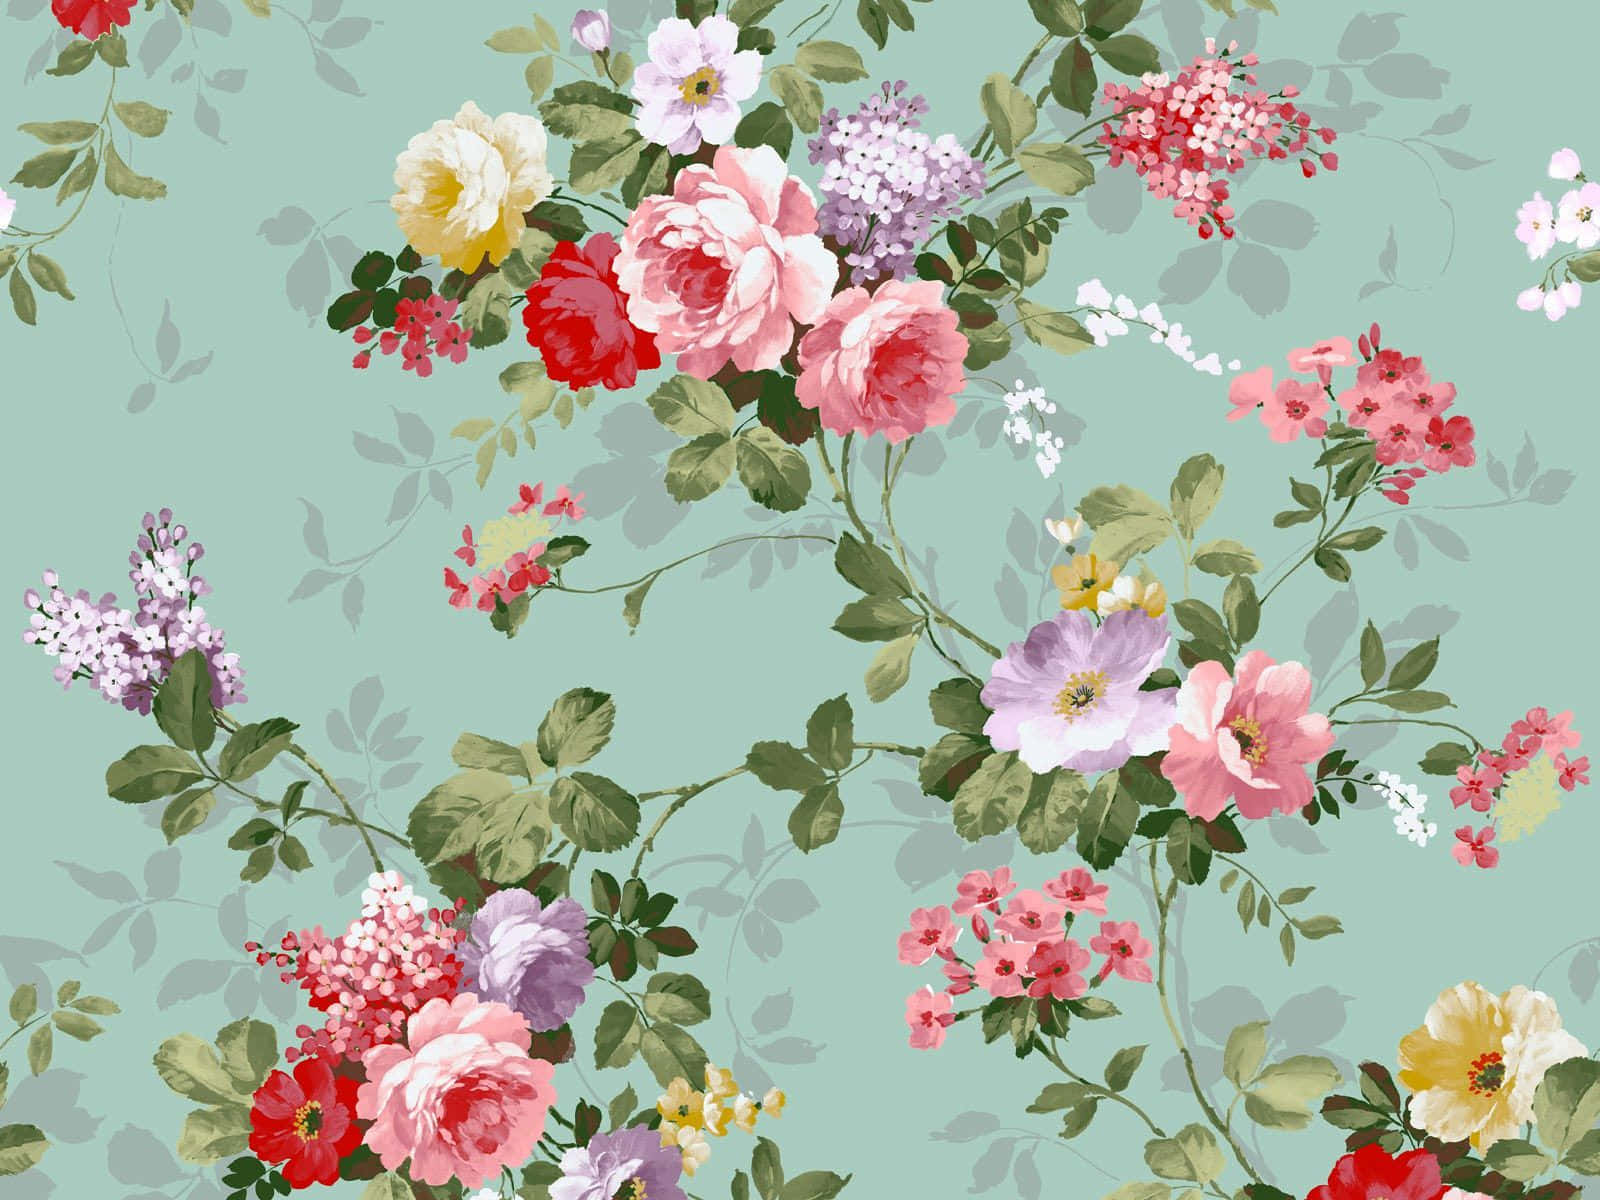 Levlivet I Full Blom Med Denna Vackra Blomsterbilden Till Din Laptop! Wallpaper